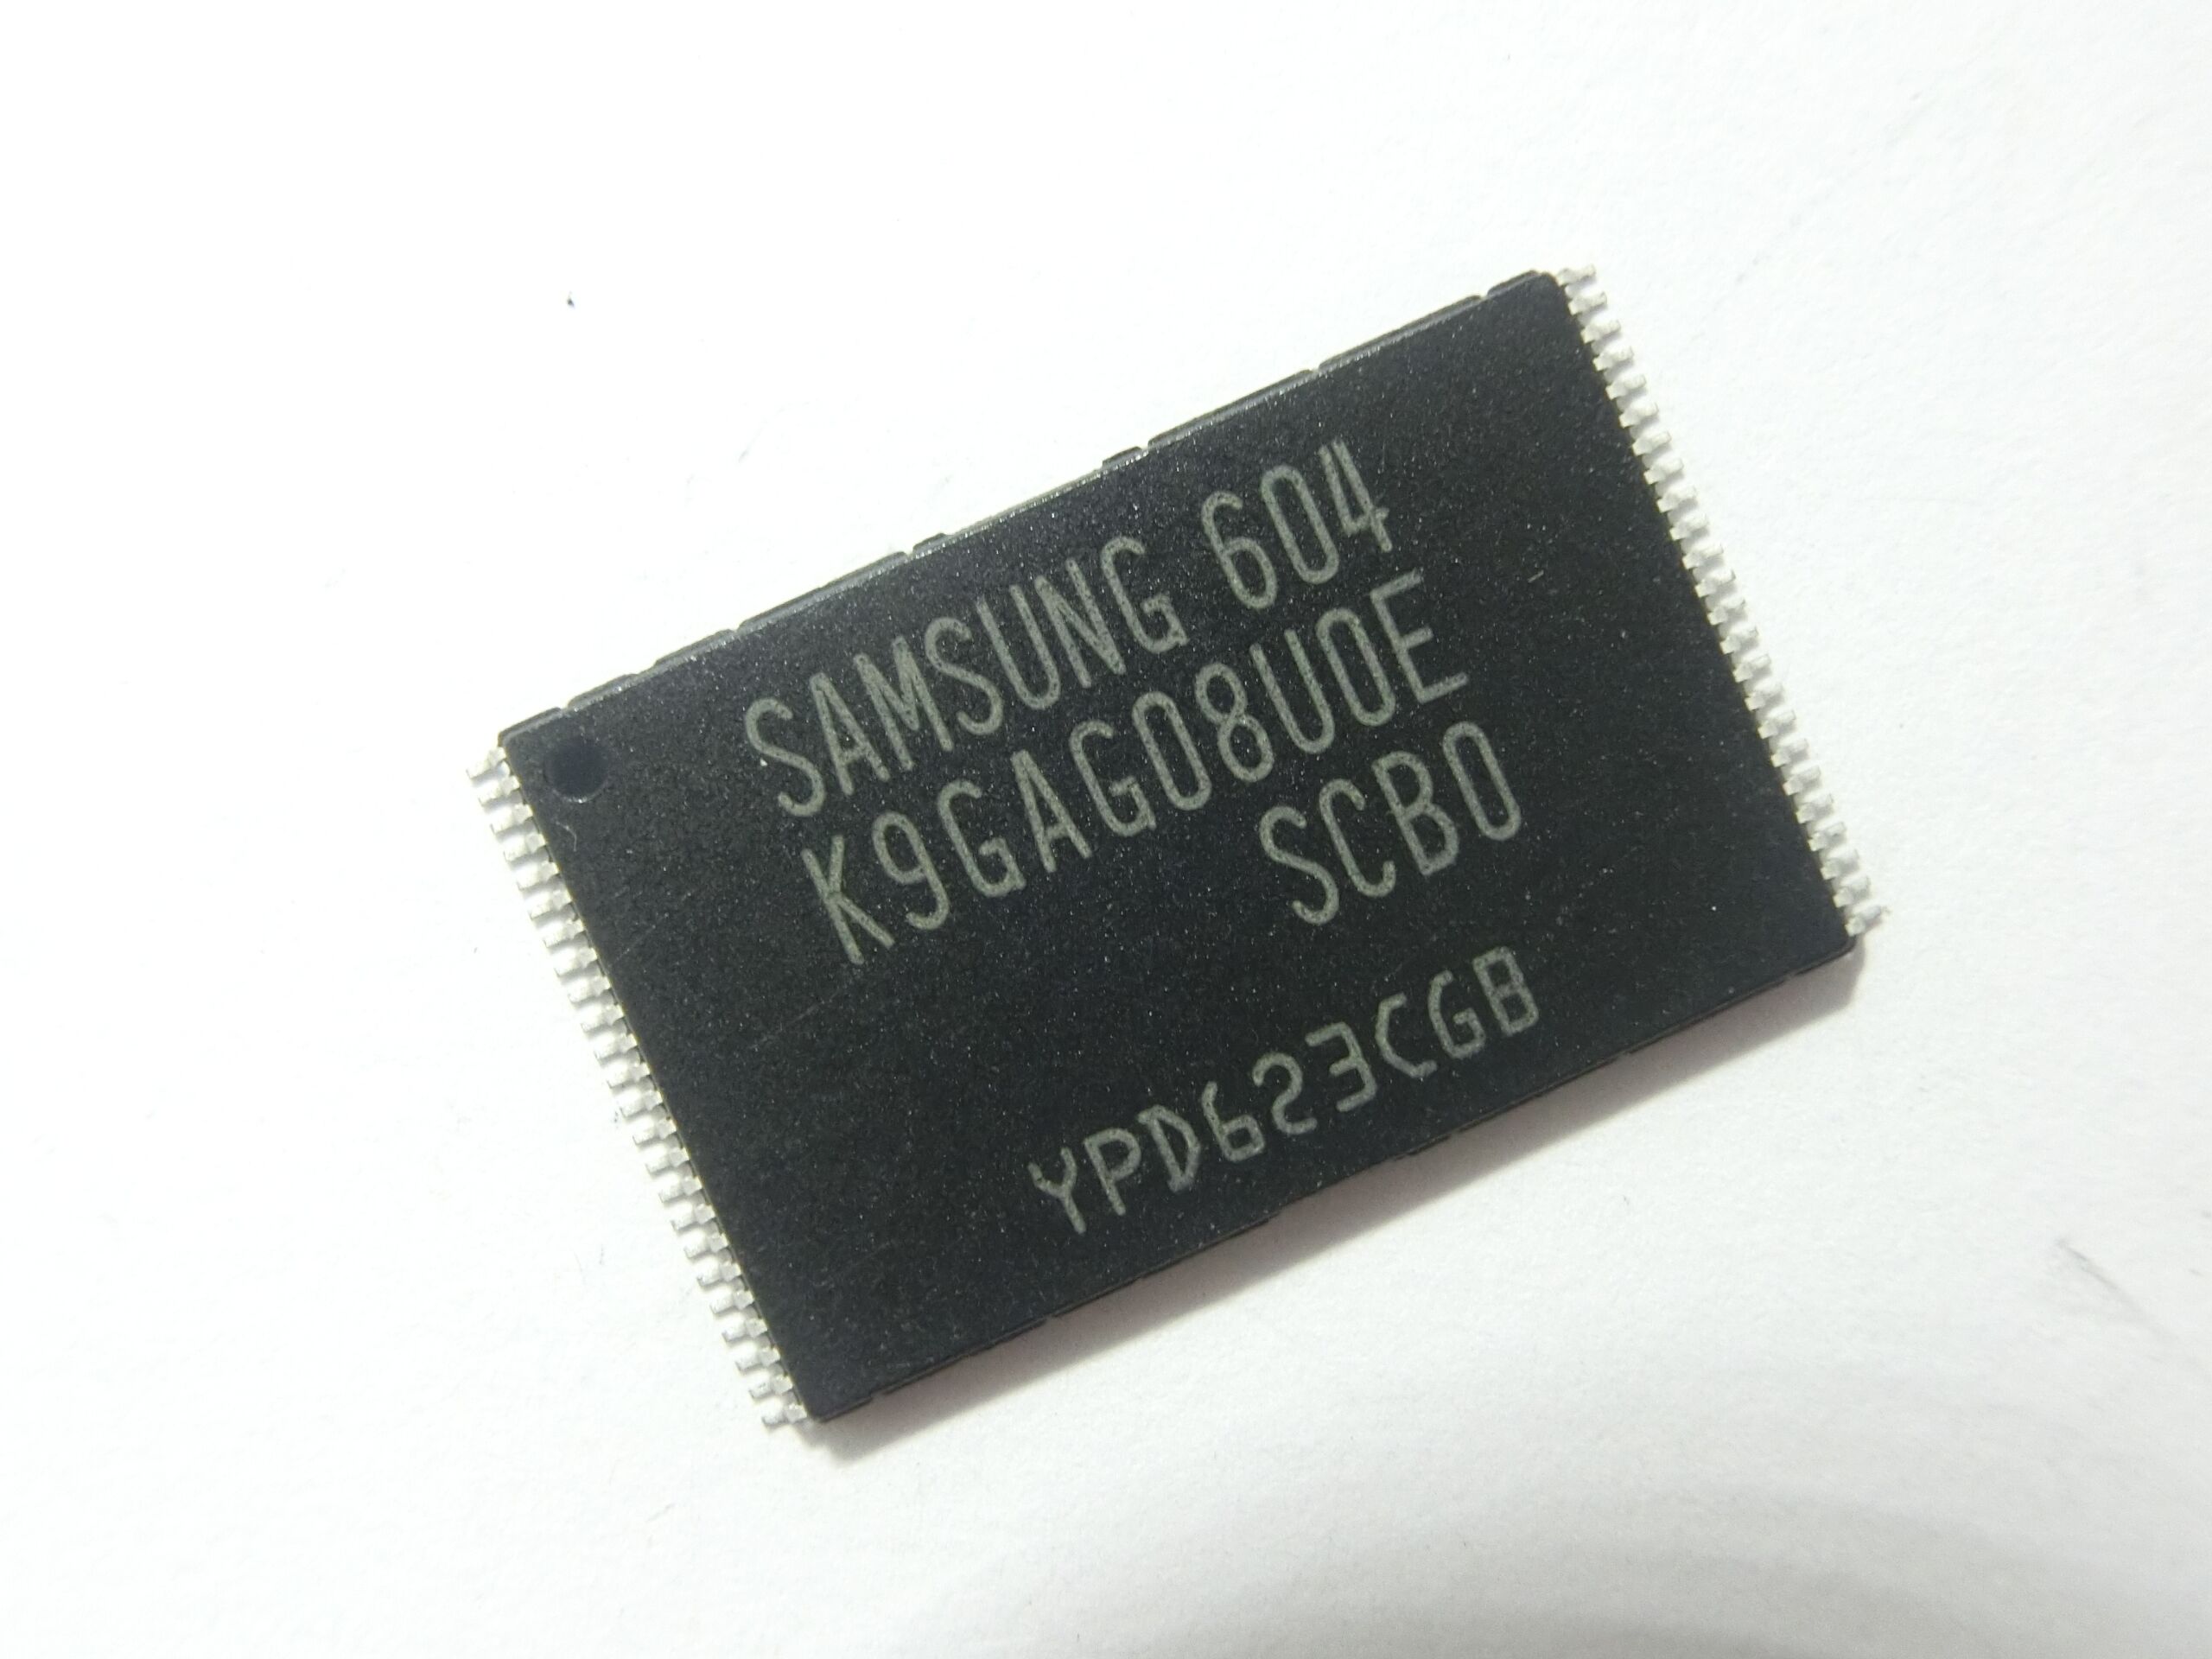 K9GAG08UOE-SCBO 三星 2G存储IC芯片 电子元器件配套